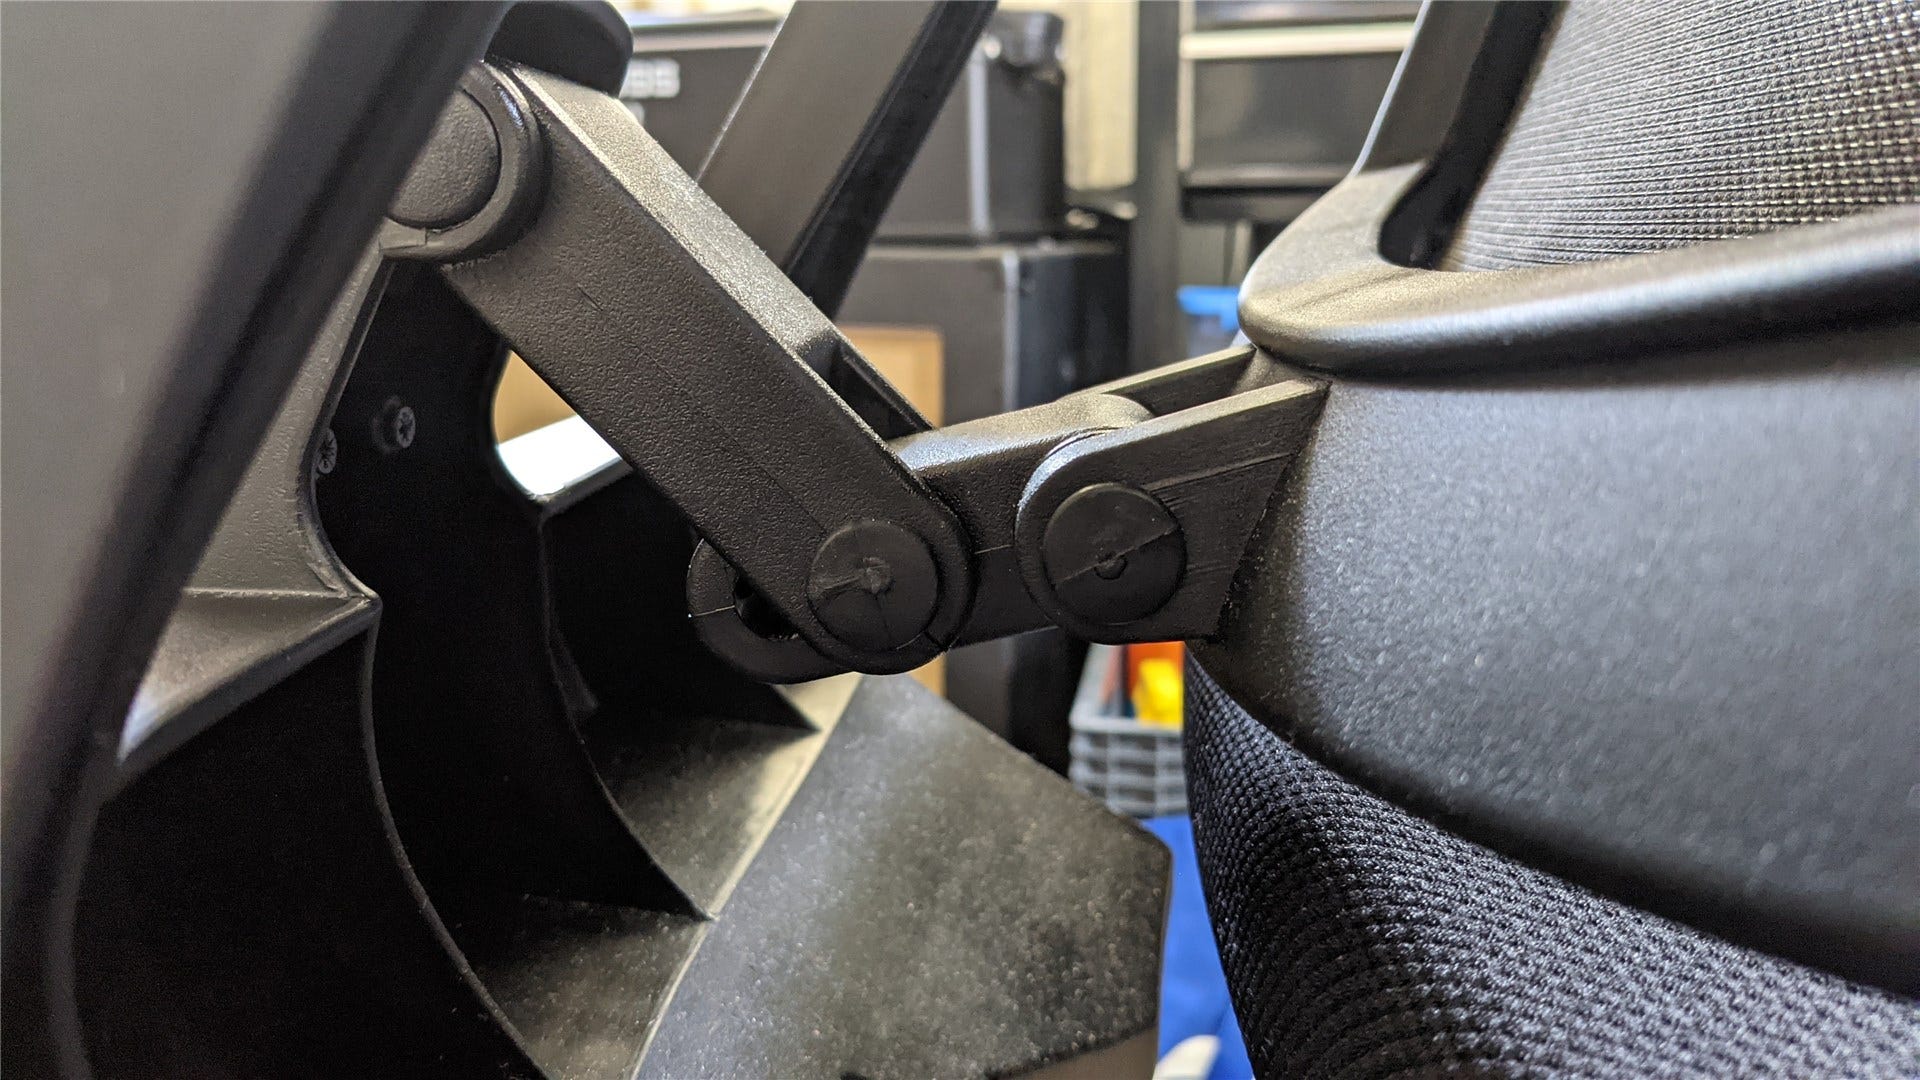 Mekanisme fleksibel bawah di sandaran kursi